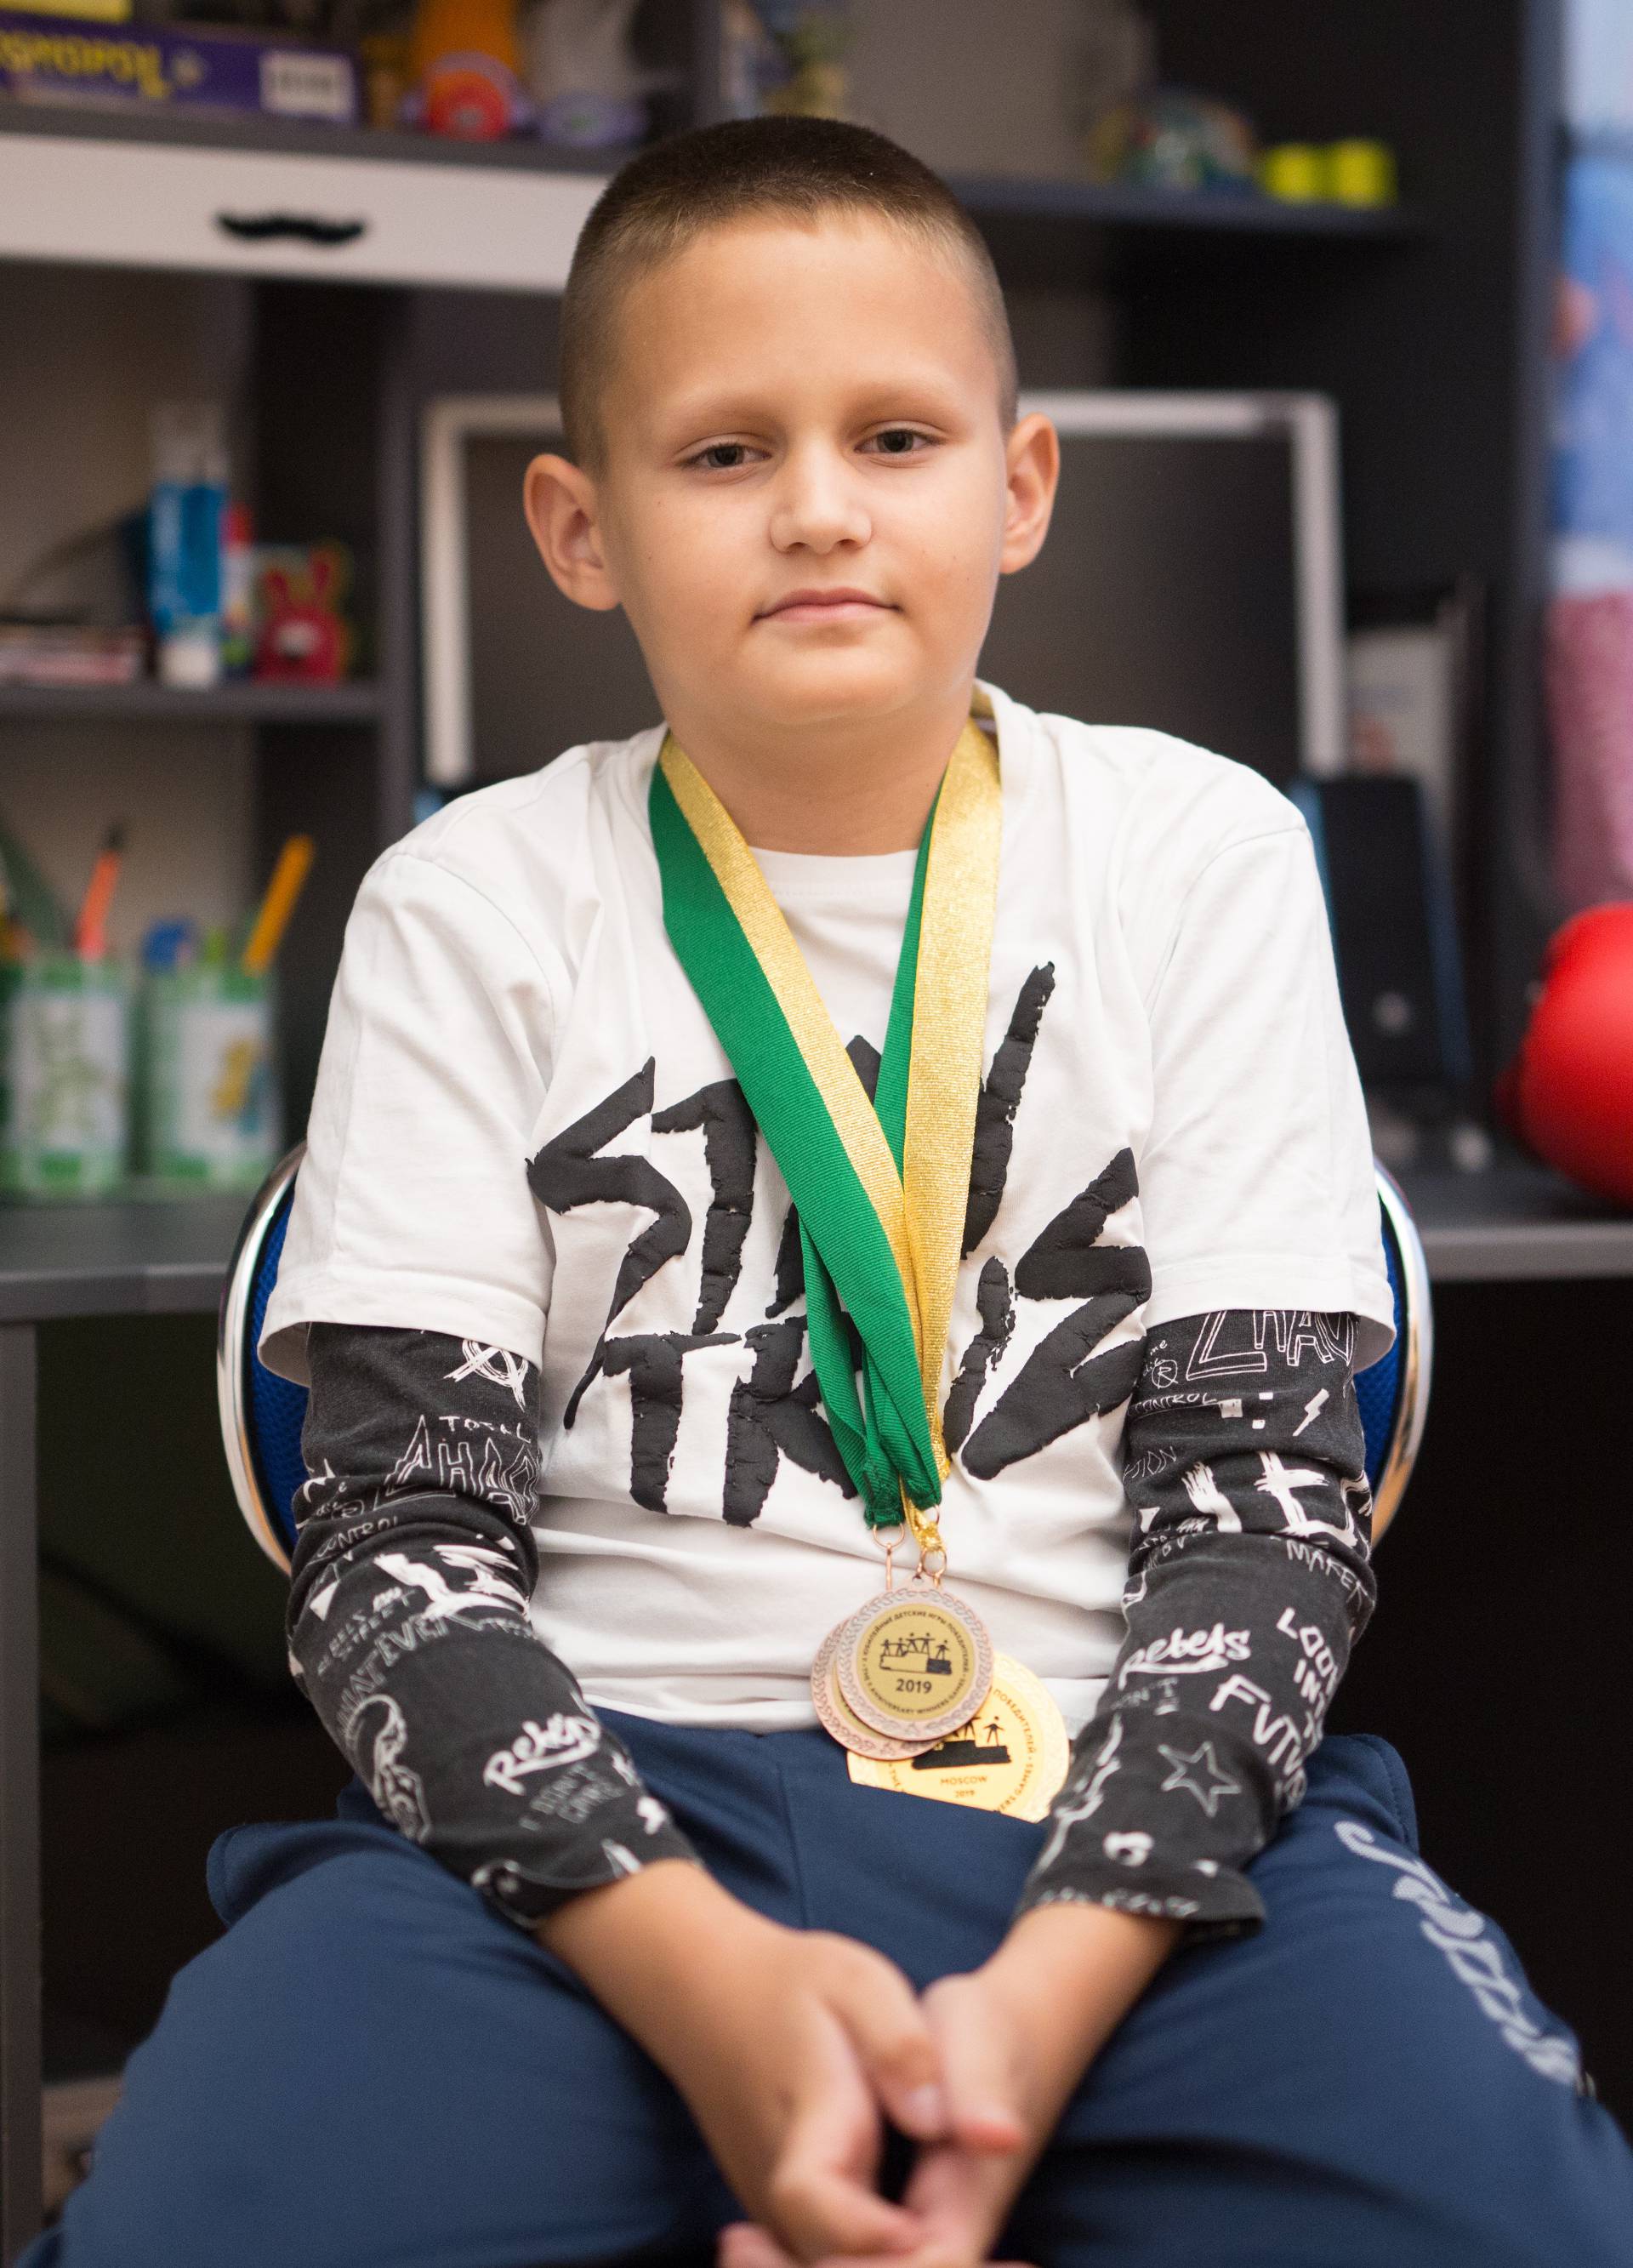 Mali heroji: Mi smo pobijedili bolest, danas osvajamo medalje